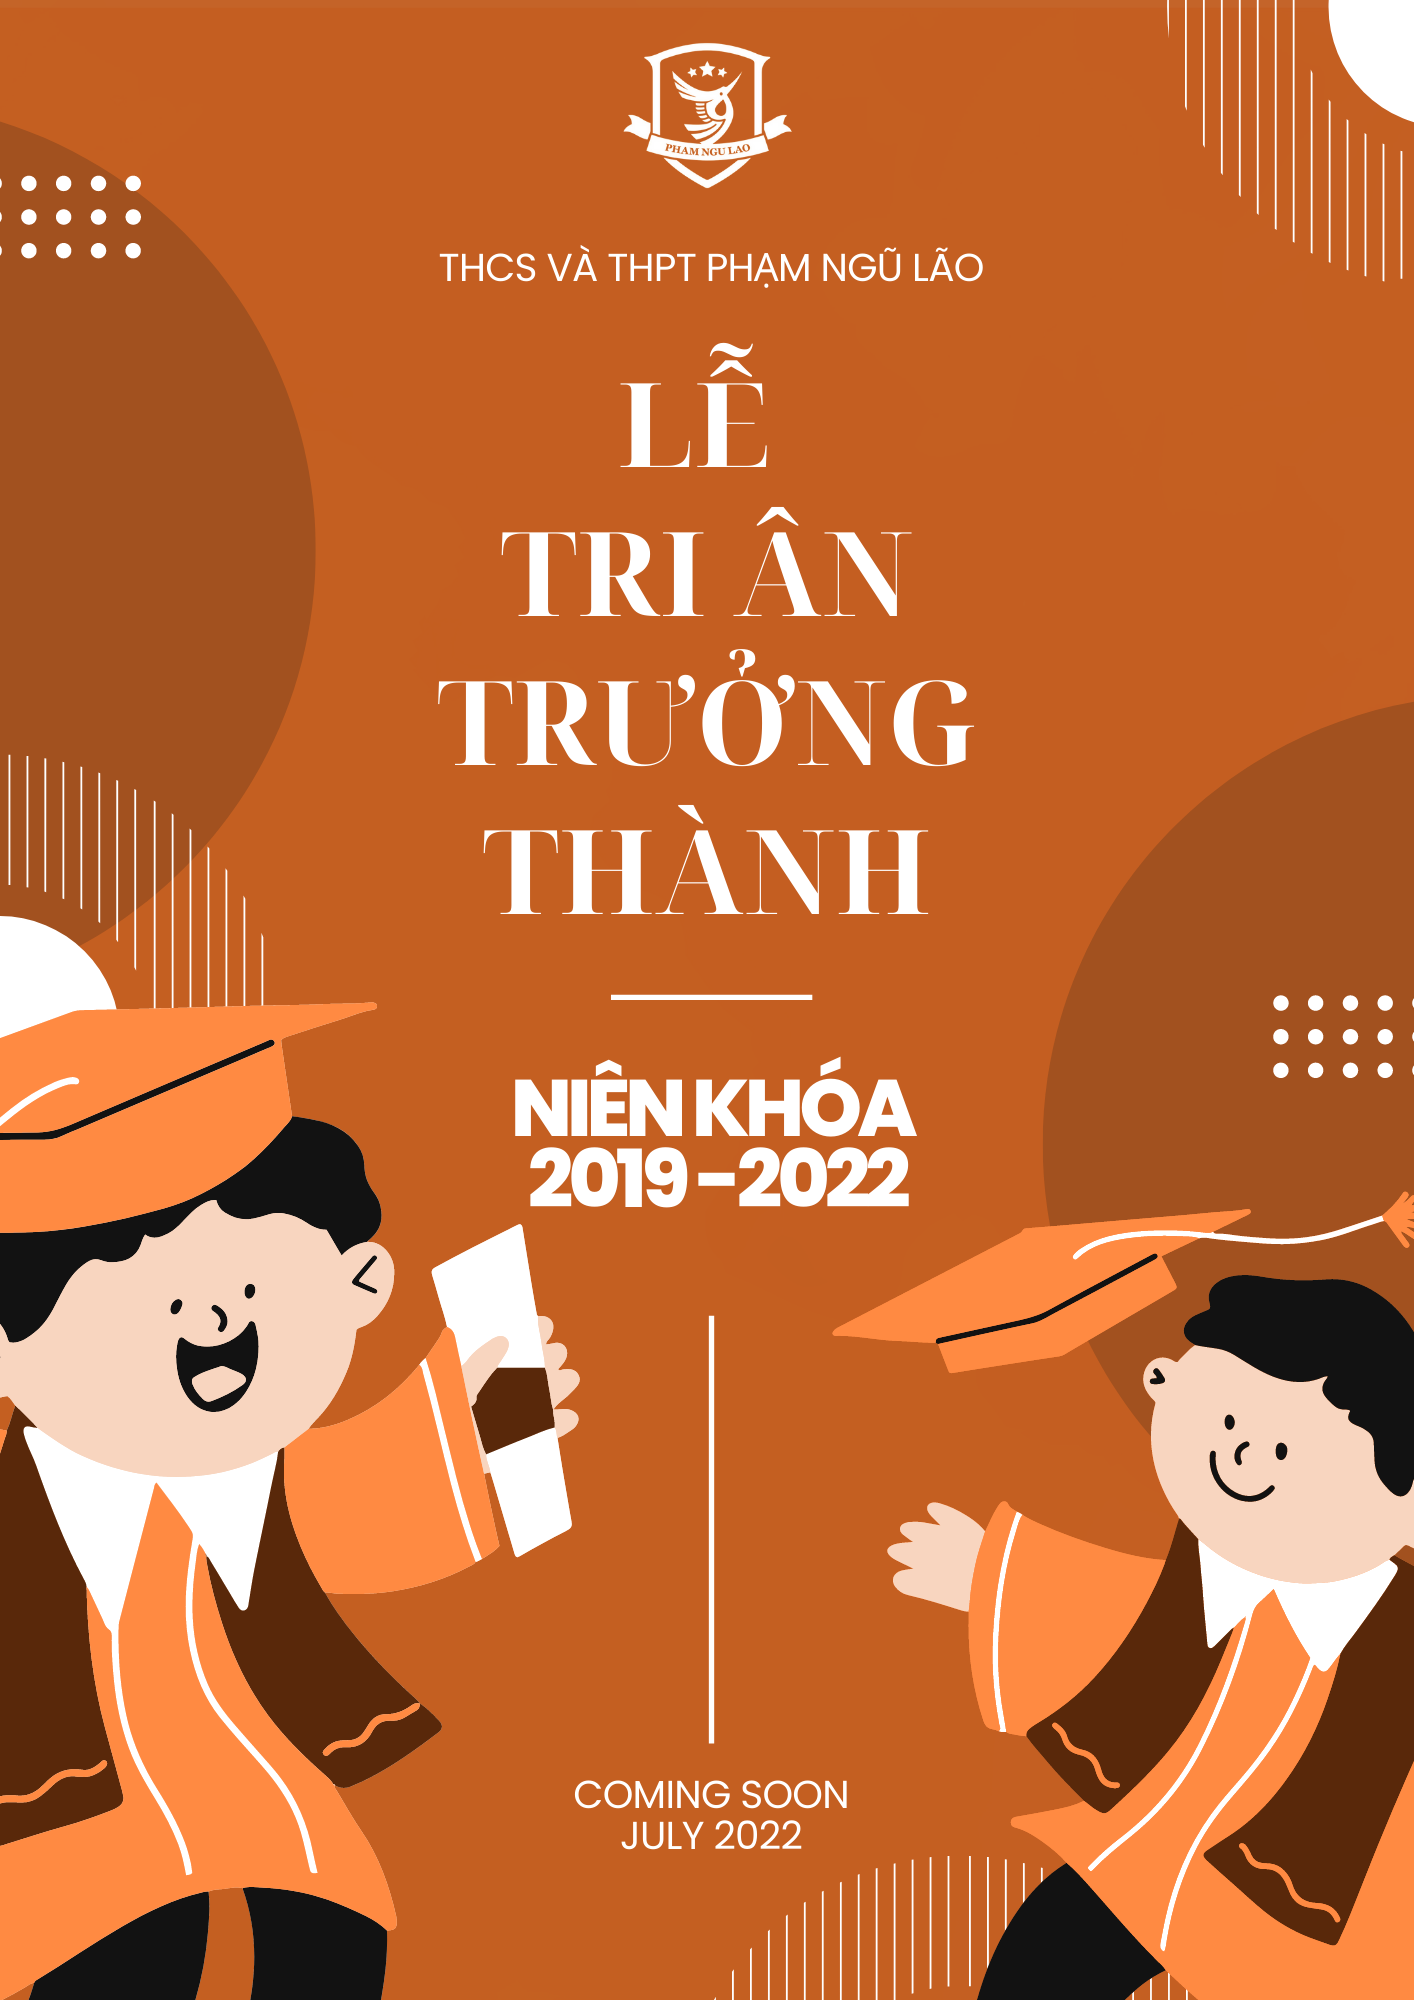 LỄ TRI ÂN TRƯỞNG THÀNH KHÓA 2021 - 2022